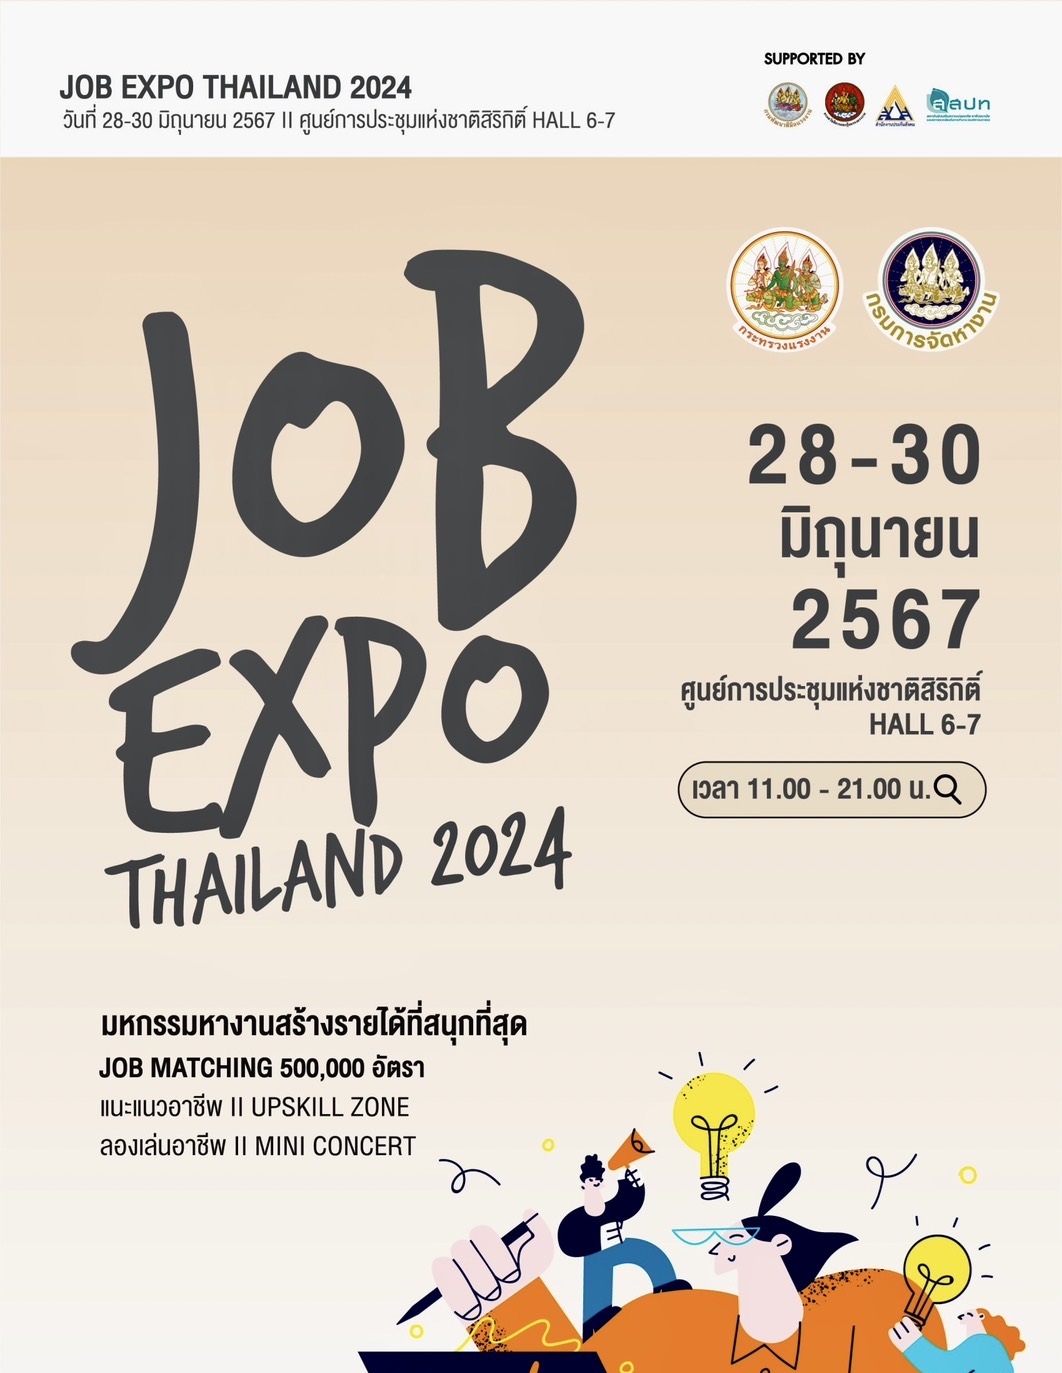 ลงทะเบียน JOB EXPO THAILAND 2024 